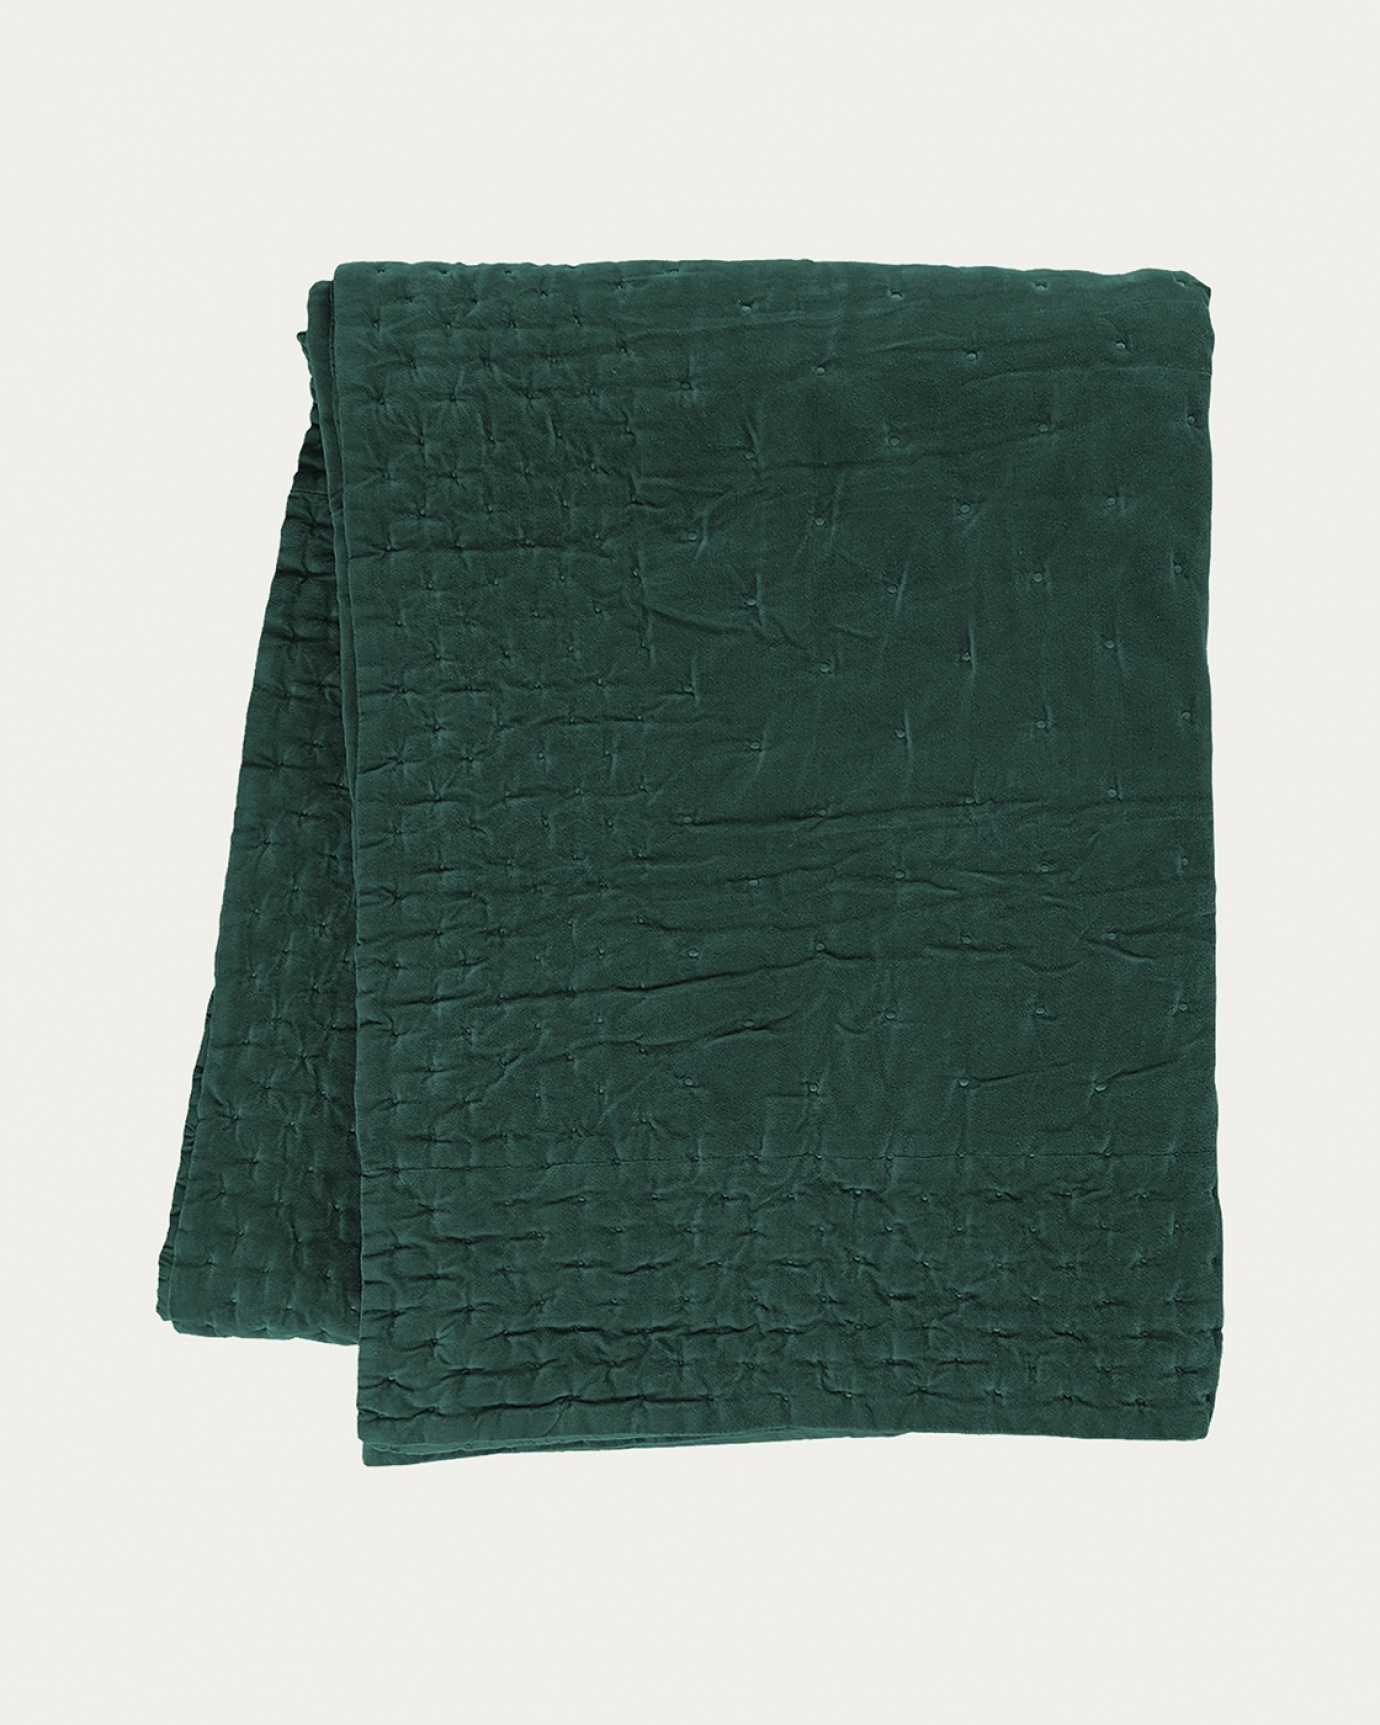 Produktbild djup smaragdgrön PAOLO överkast av mjuk bomullssammet för dubbelsäng från LINUM DESIGN. Storlek 270x260 cm.